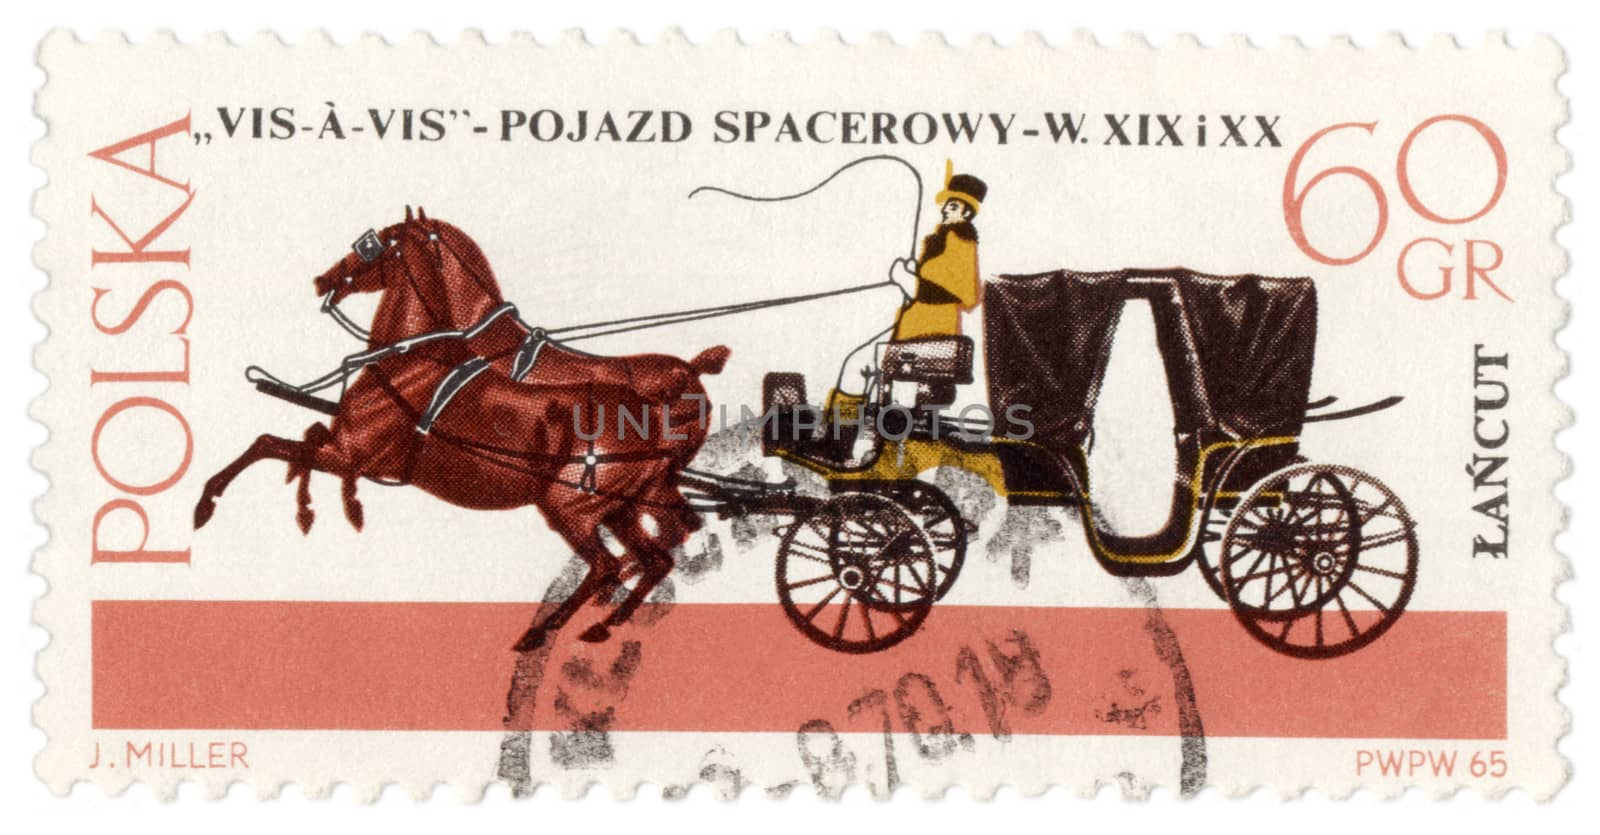 POLAND - CIRCA 1965: a stamp printed in Poland shows old carriage - Vis-A-Vis (XIX - XX century), circa 1965